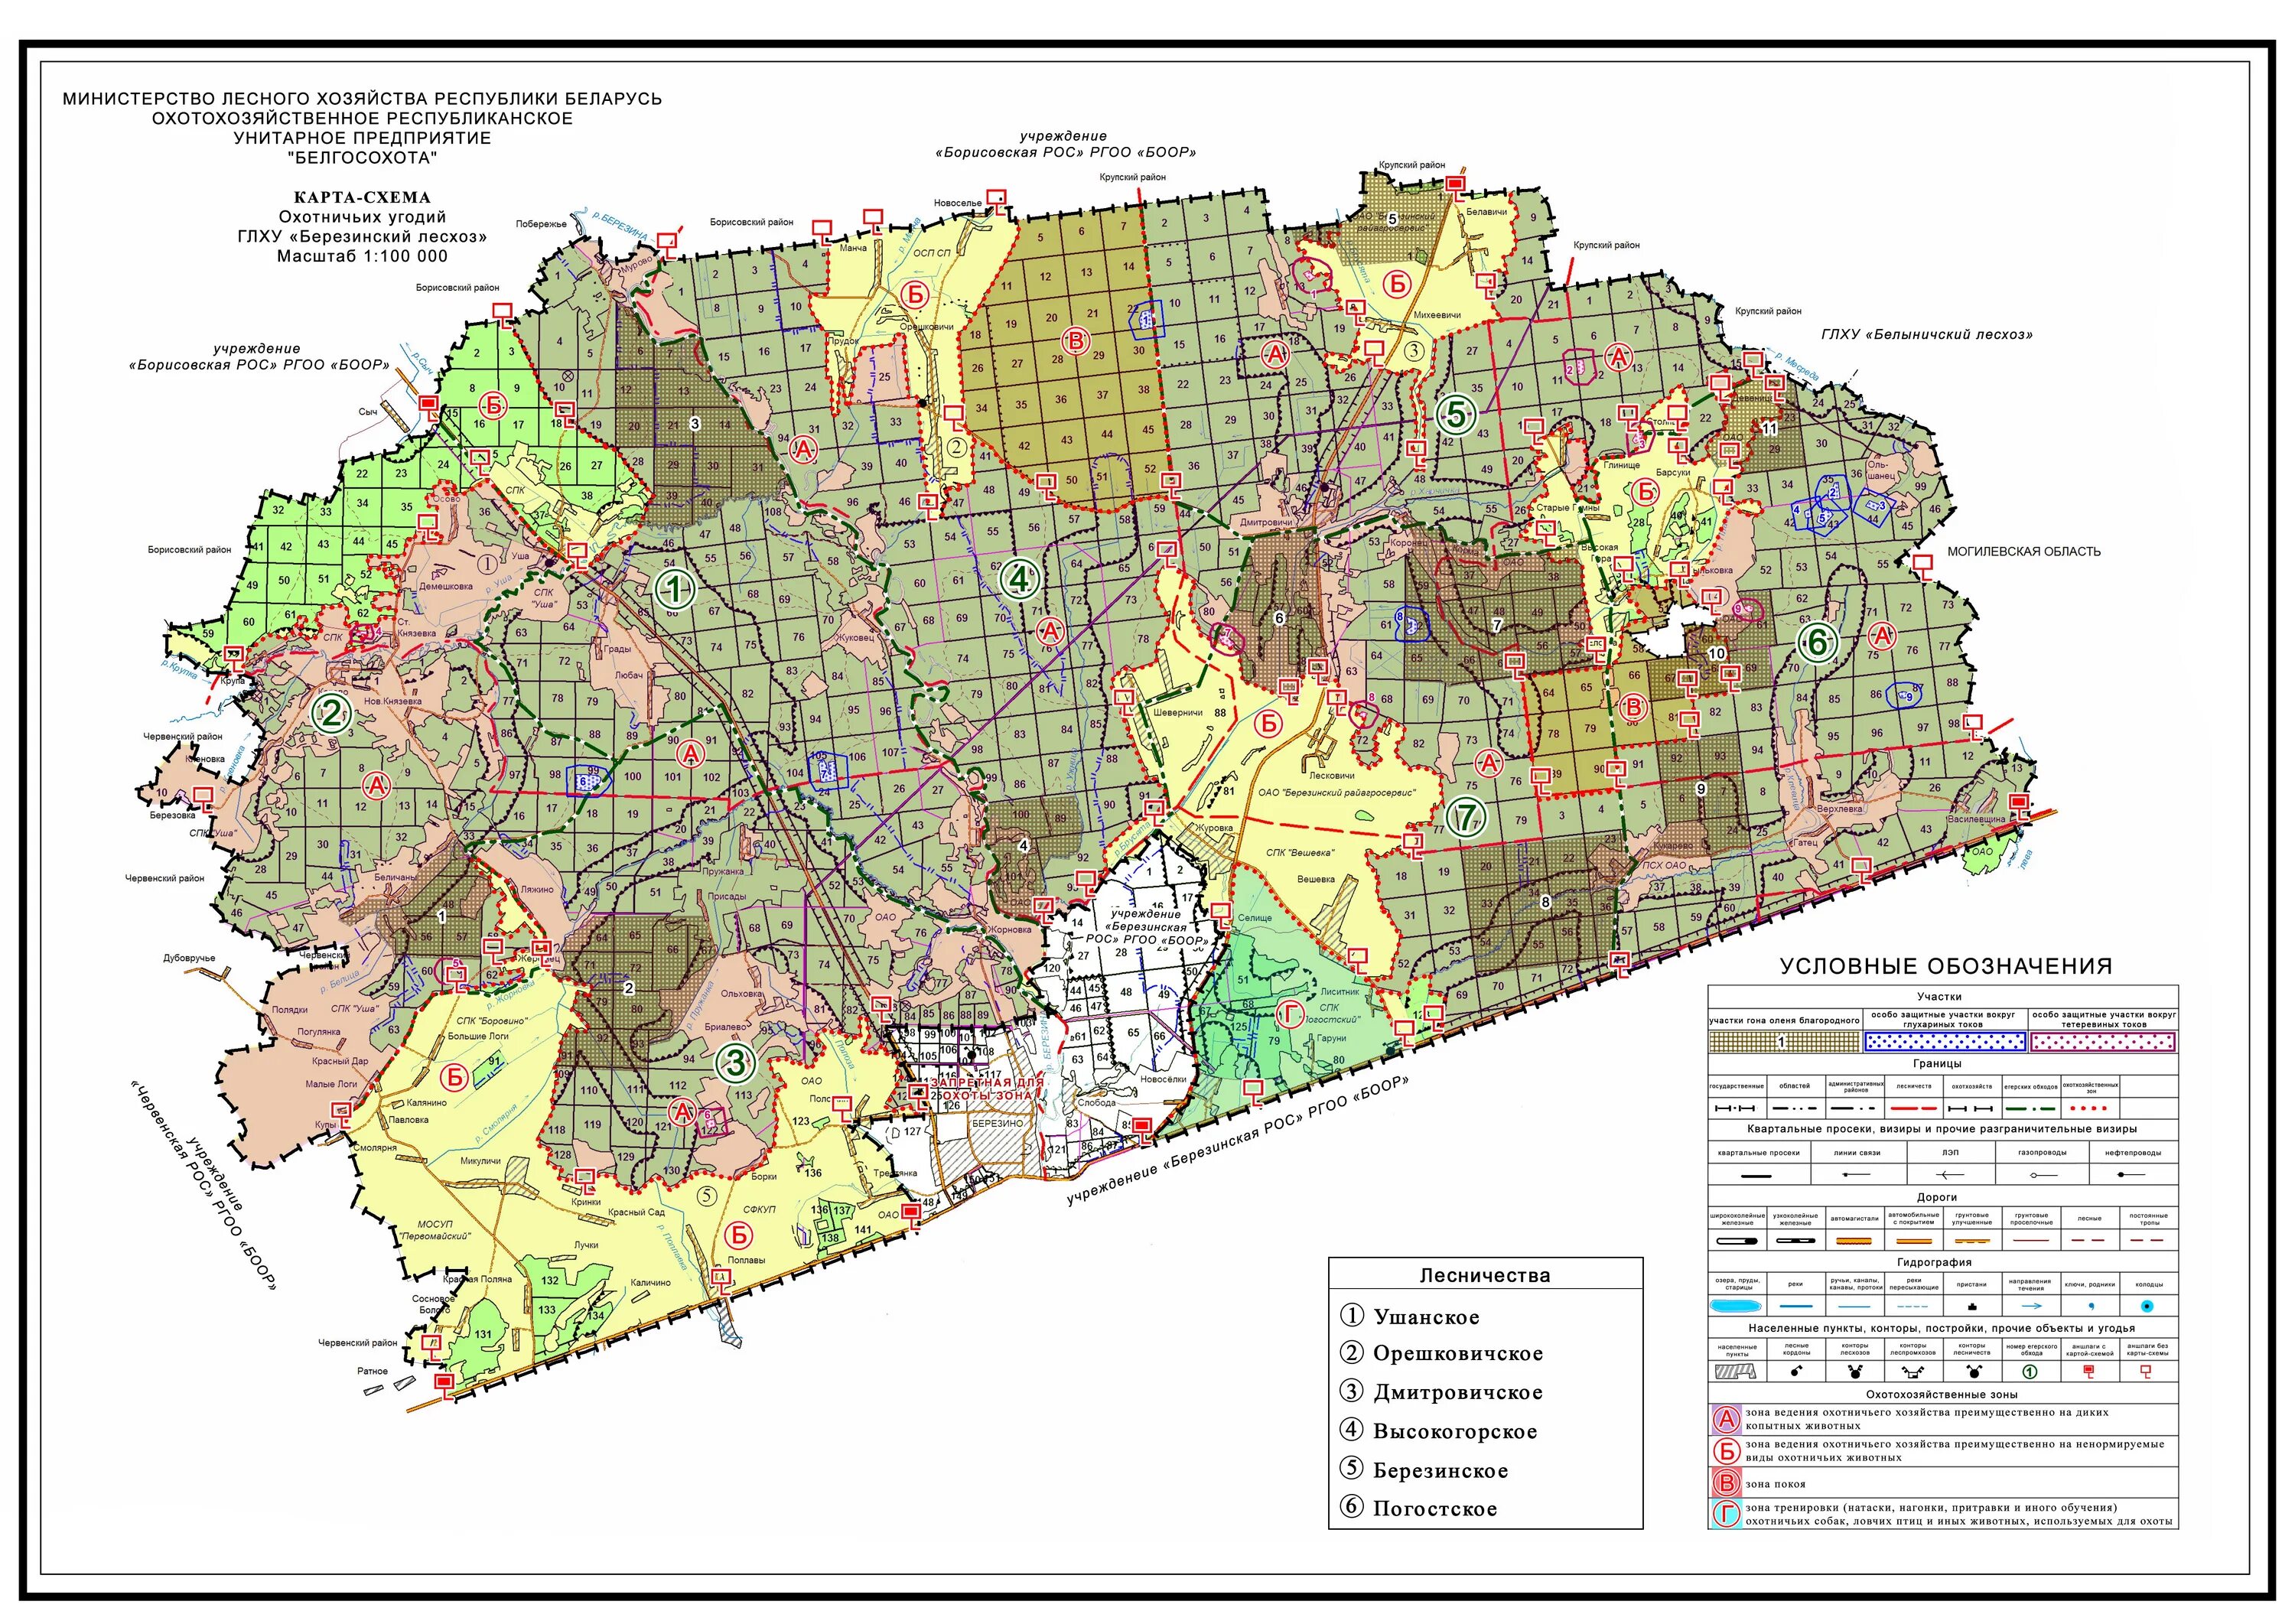 Карта лесхоза. Карта схема лесничества. Карта лесохозяйственных предприятий. Карты лесного хозяйства